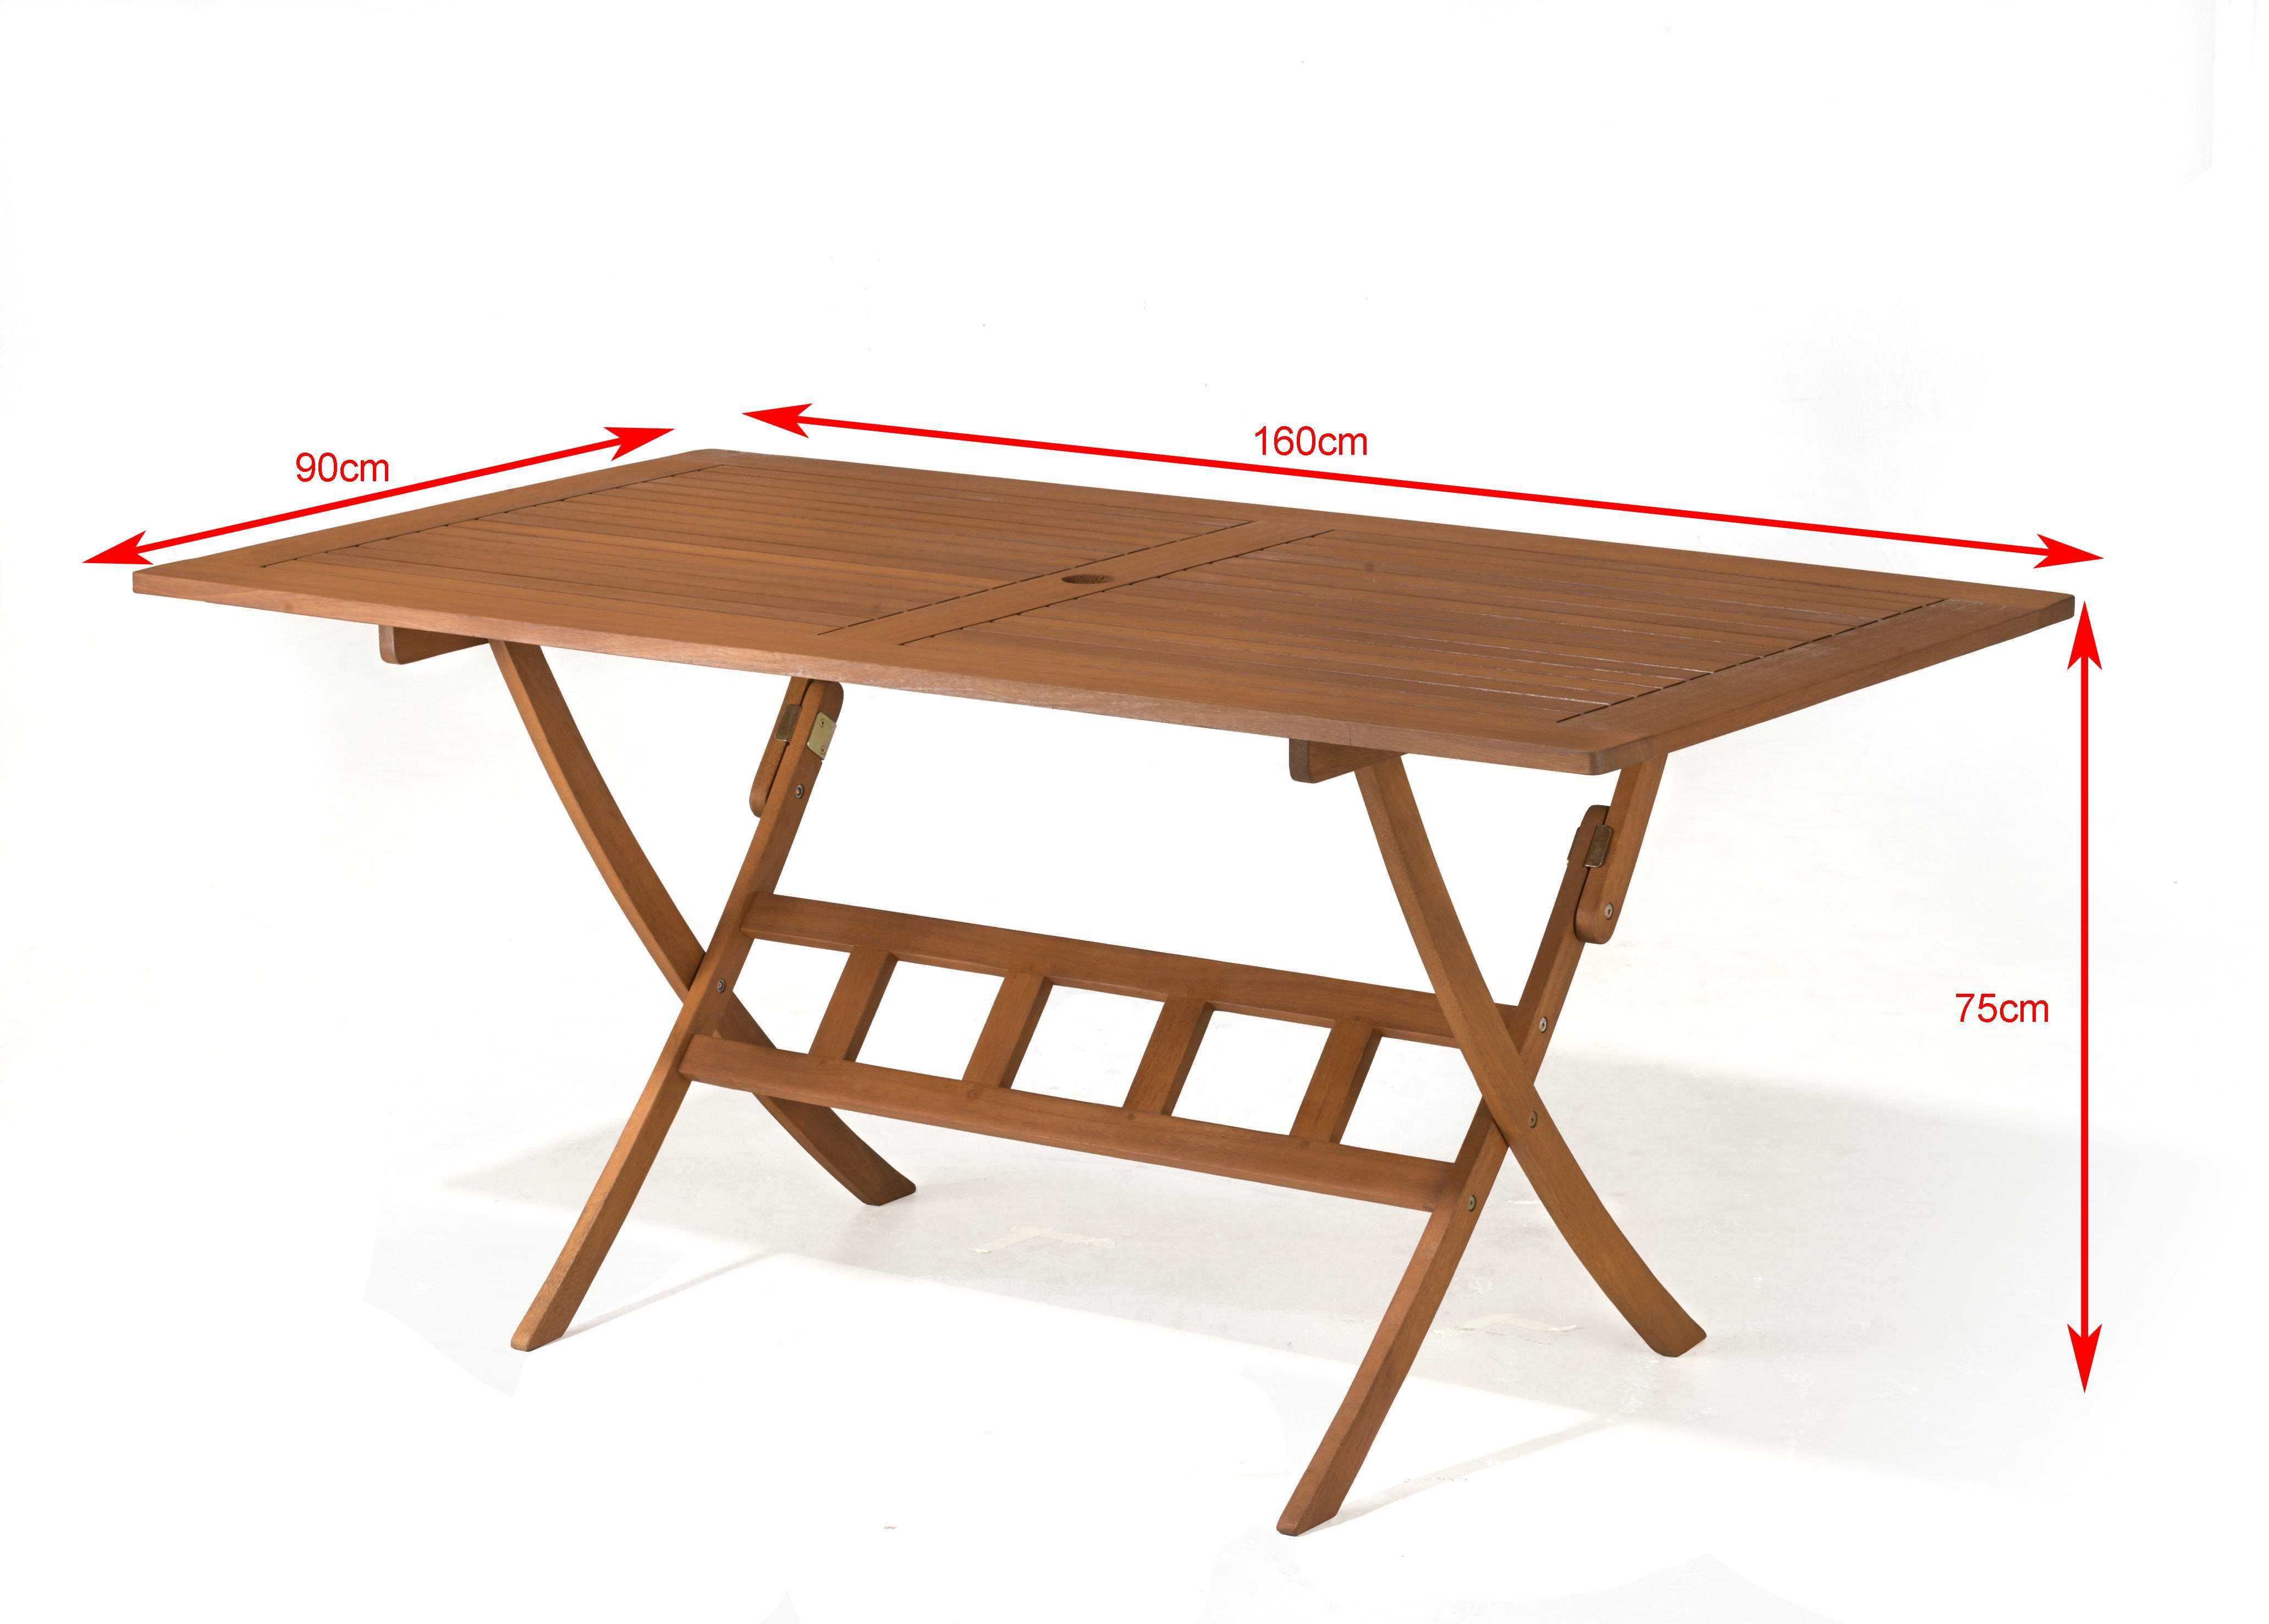 Stół ogrodowy drewniany, składany 160x90cm dla 6 osób, wygodny